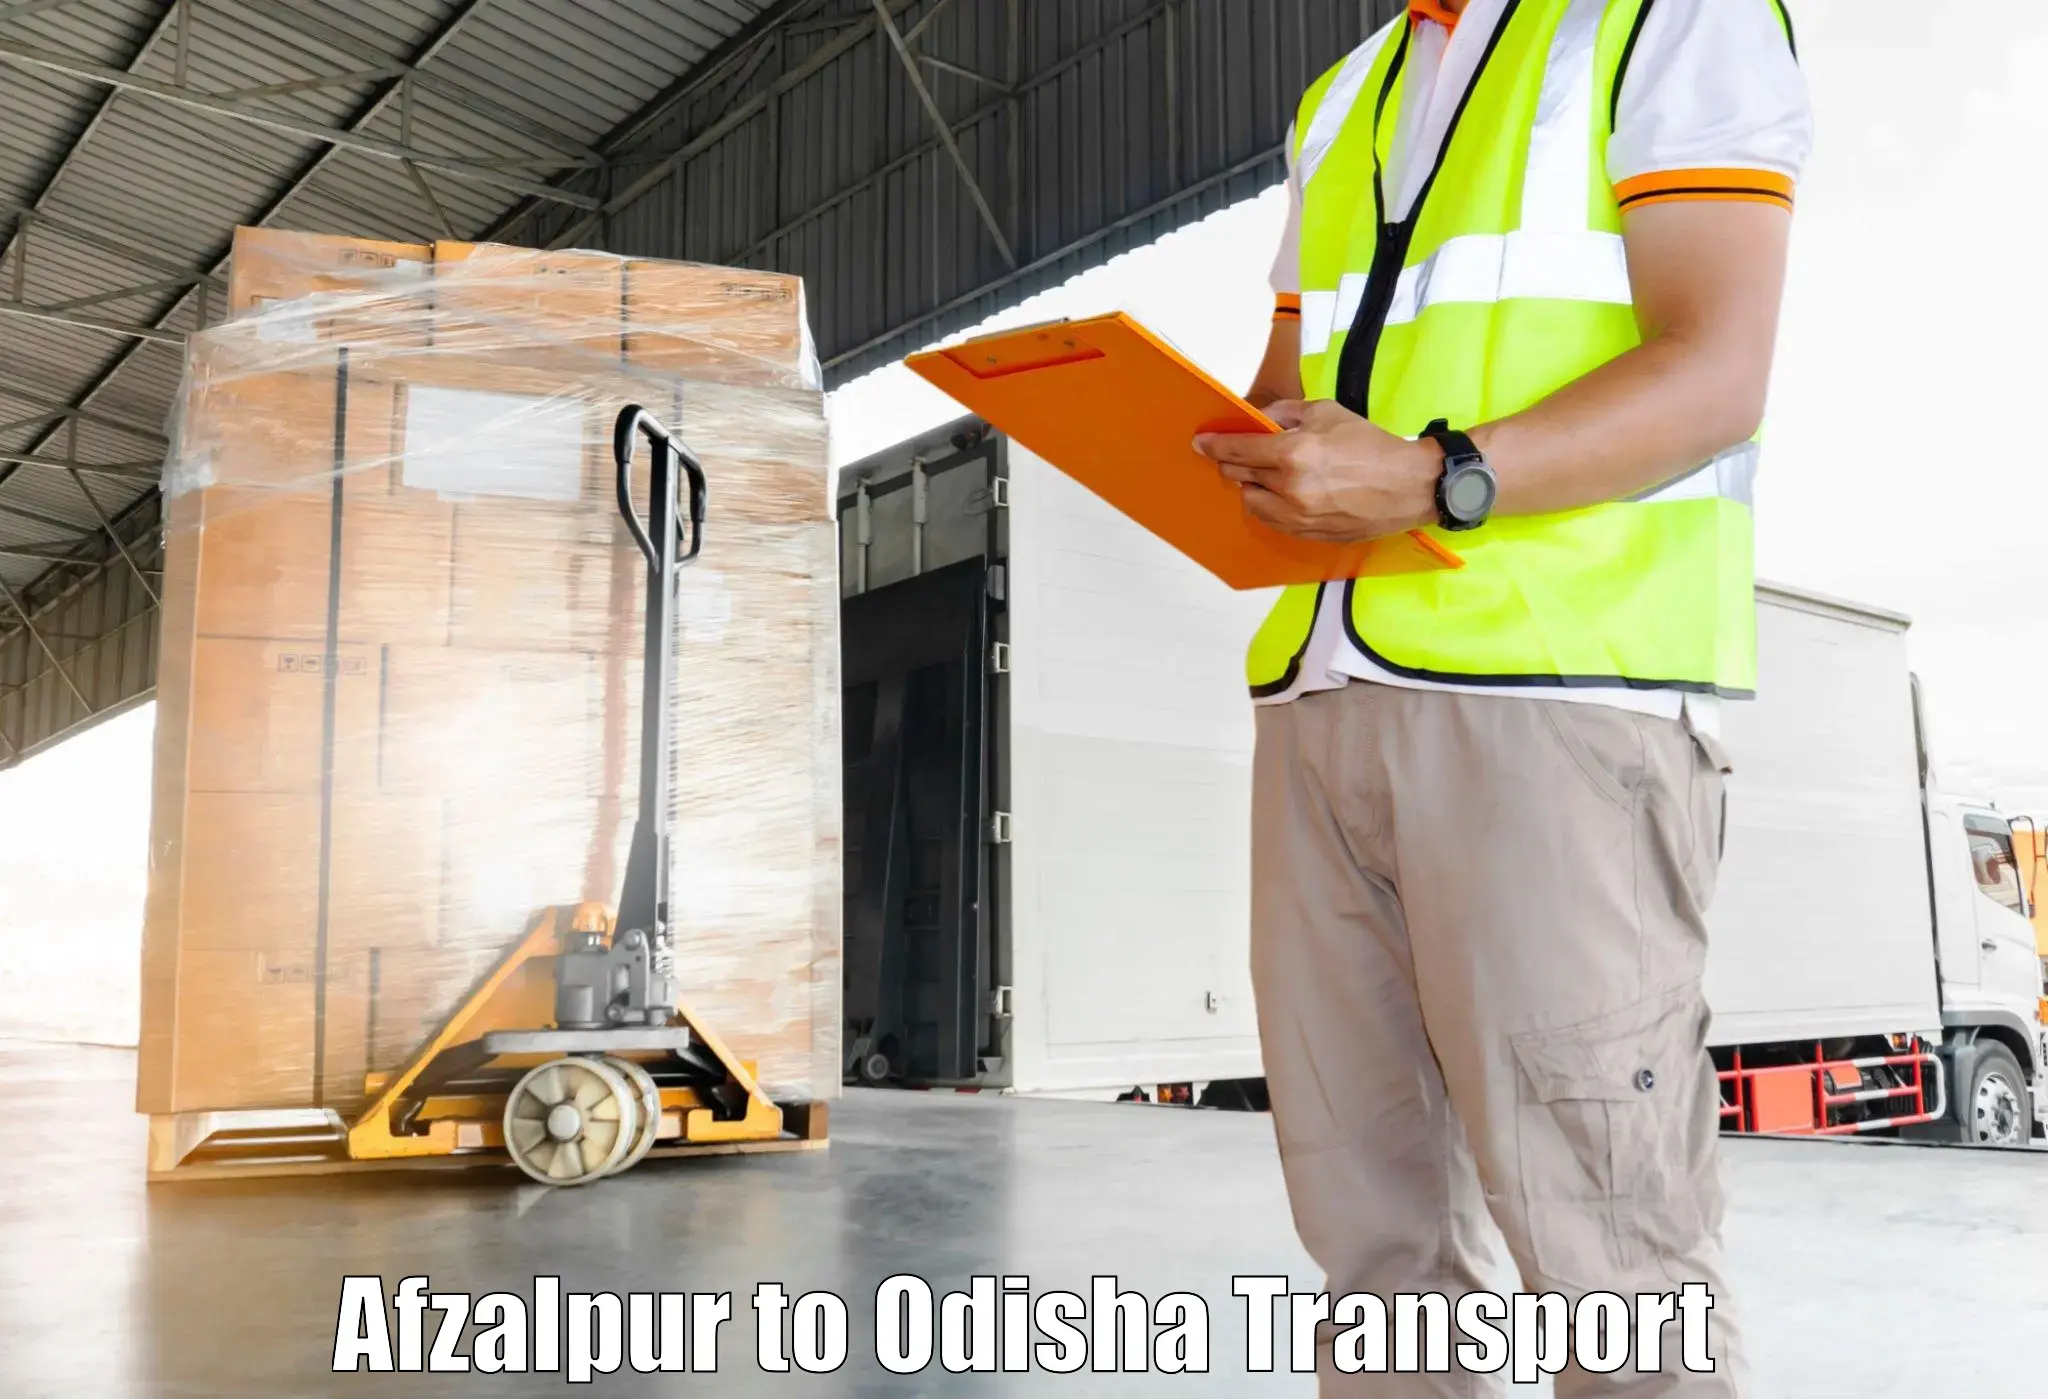 Delivery service Afzalpur to Daspalla